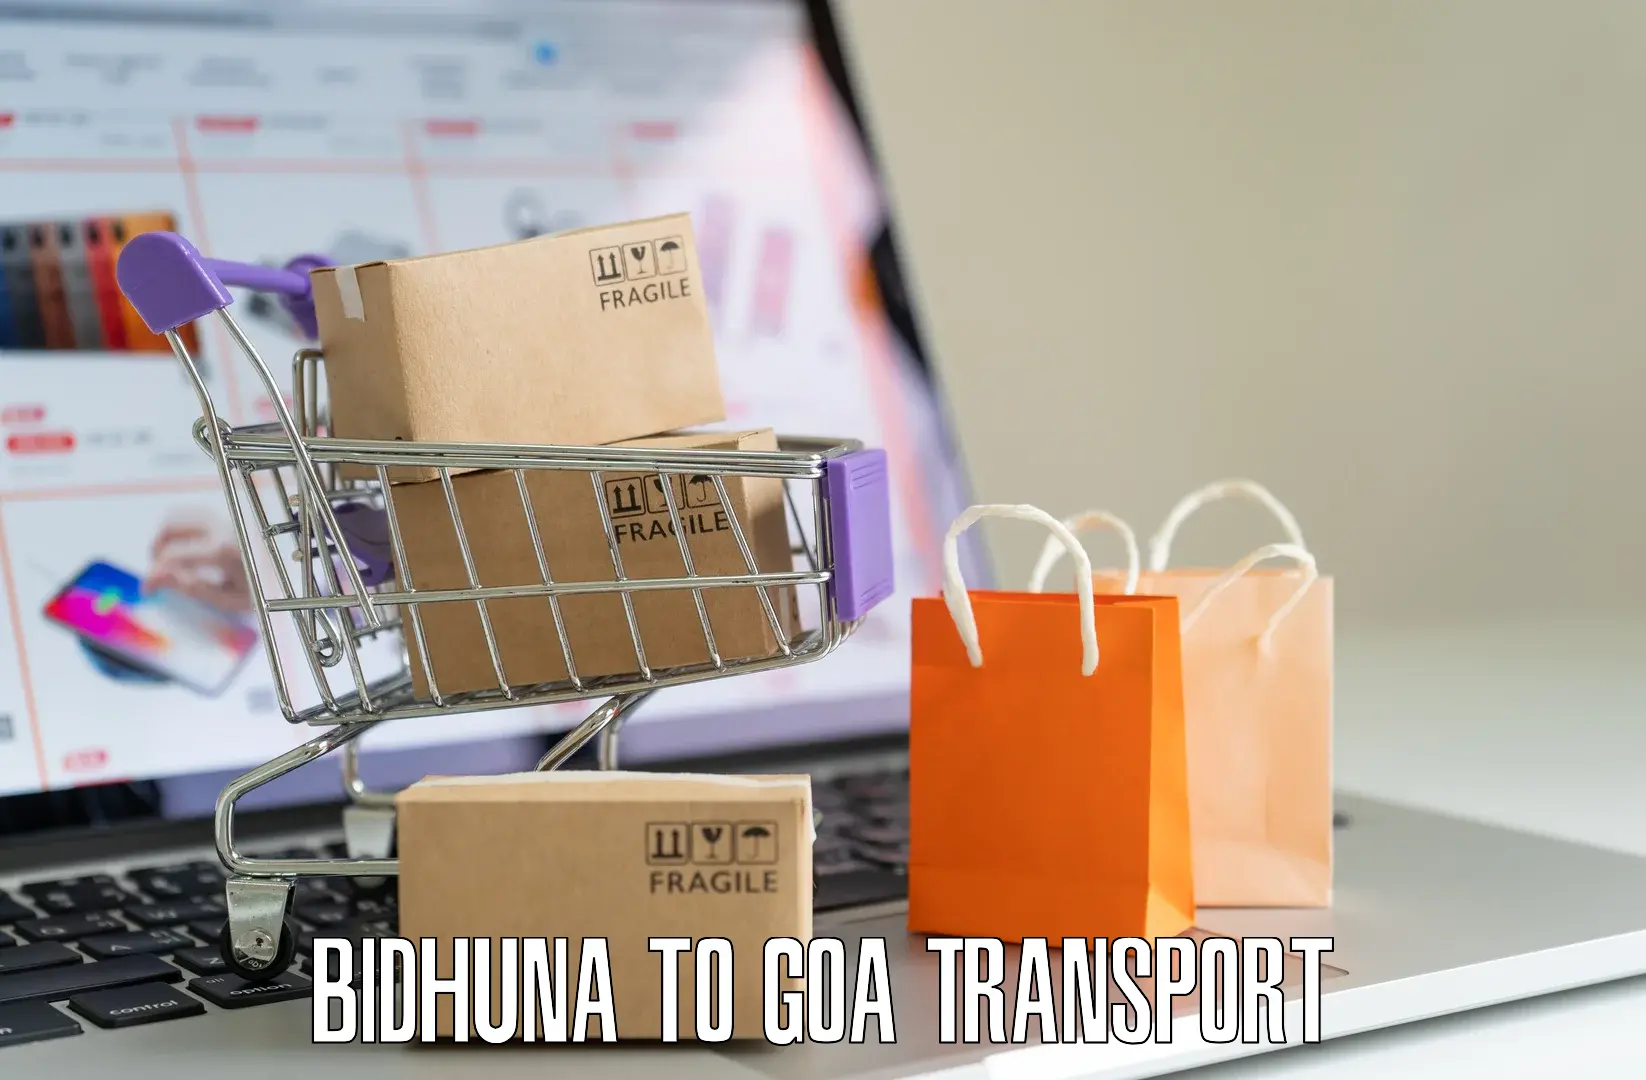 Road transport online services Bidhuna to Sanvordem